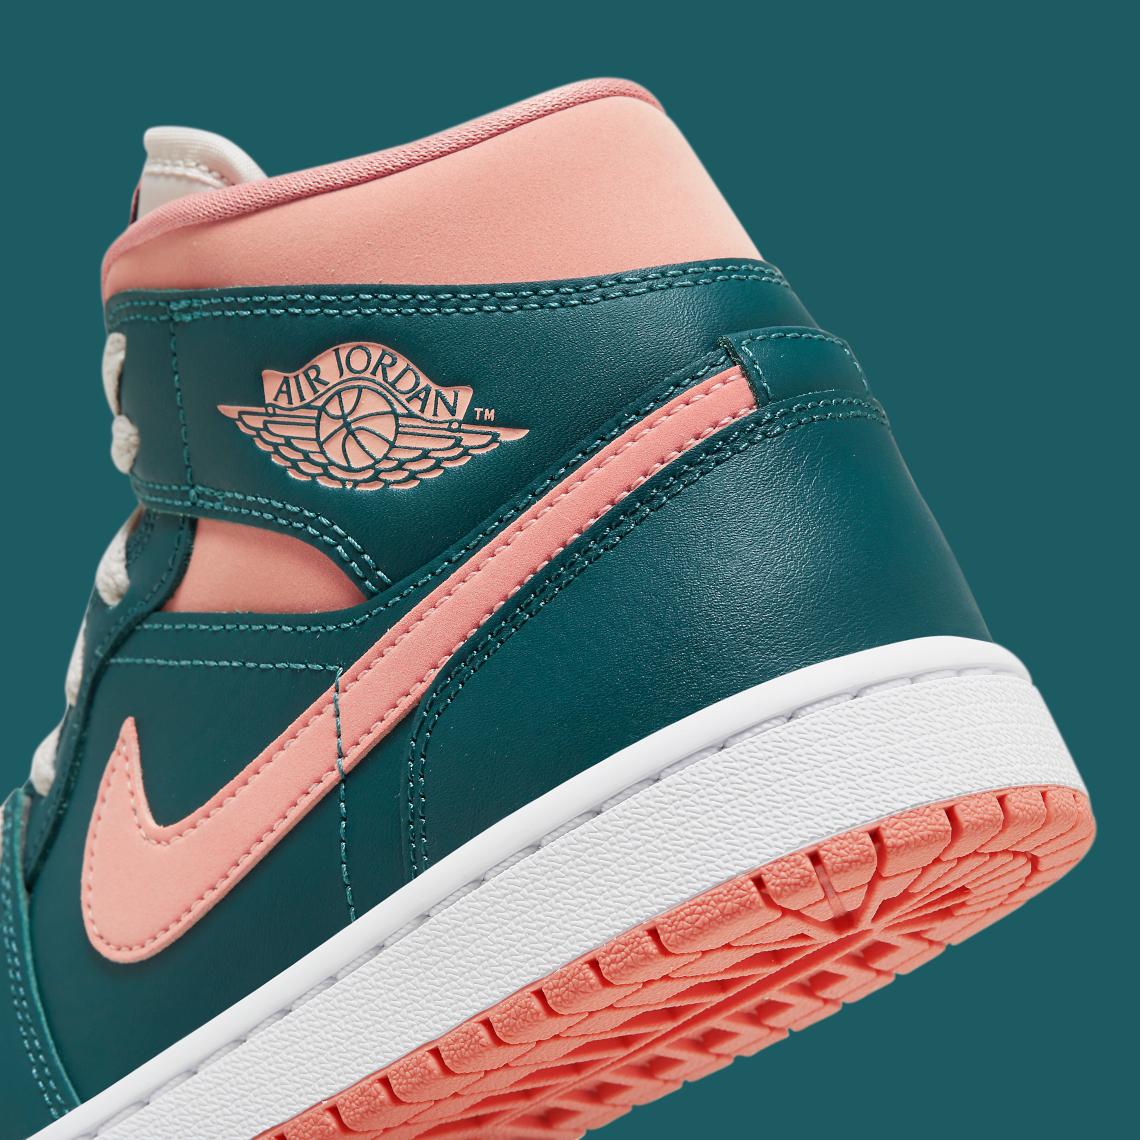 Air Jordan pink and green jordan 1 1 Mid "Dark Teal/Salmon" BQ6472-308 | SneakerNews.com